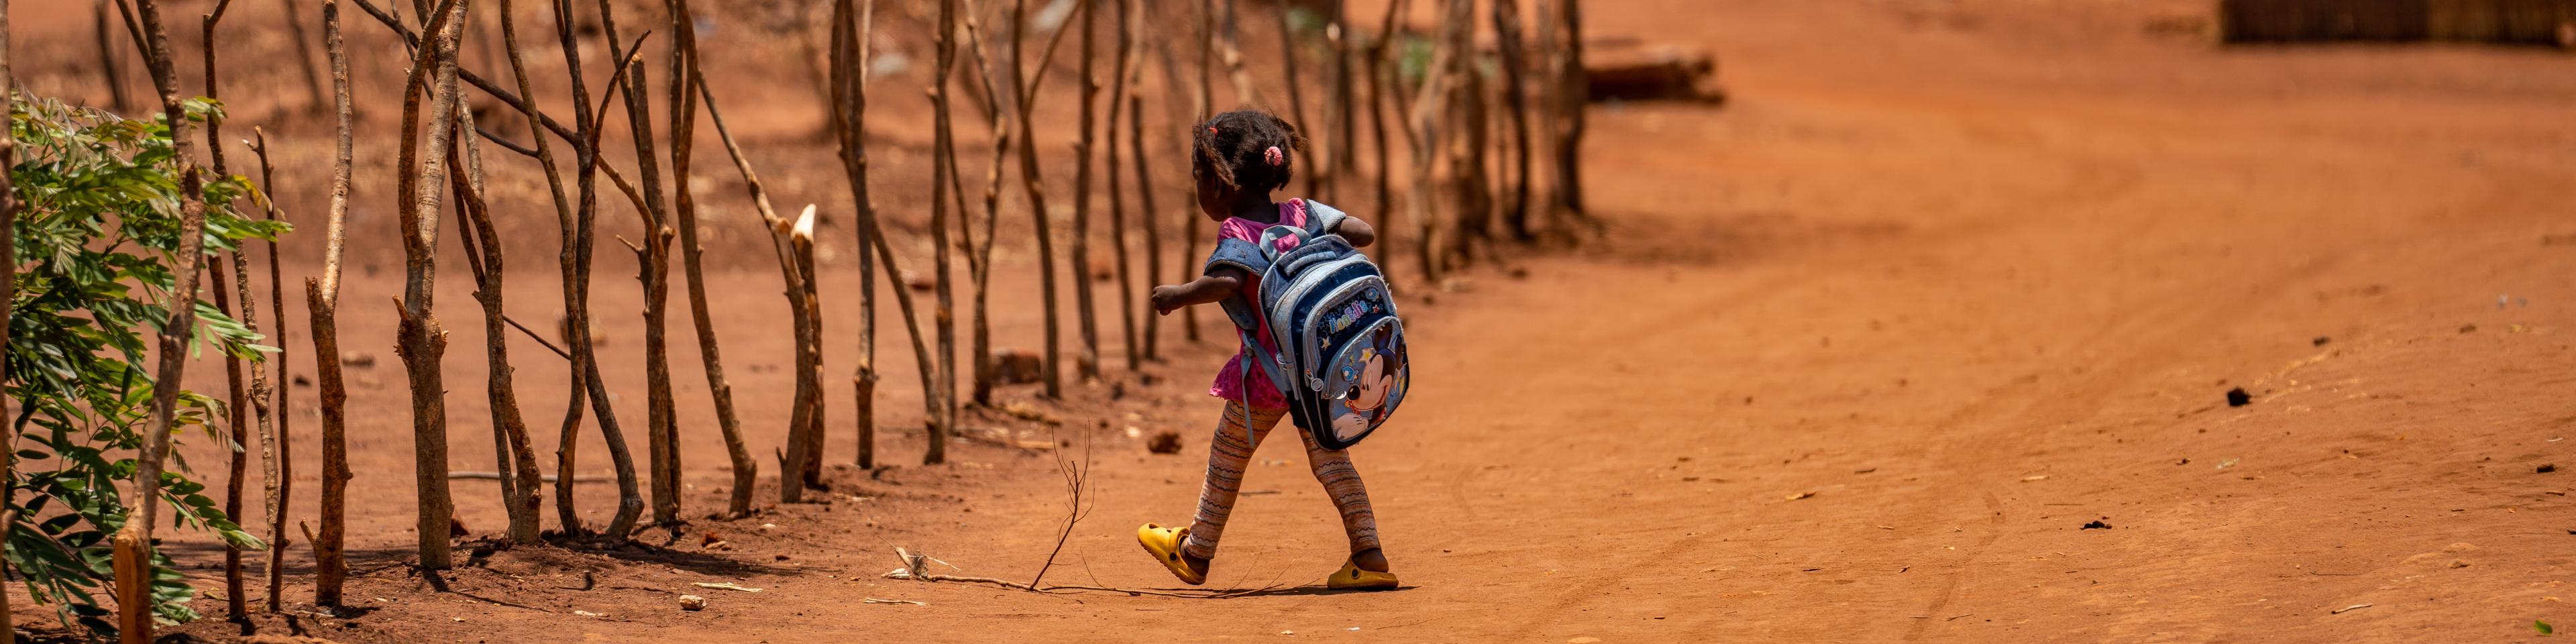 Kleiner Mädchen mit Rucksack auf staubigem Weg